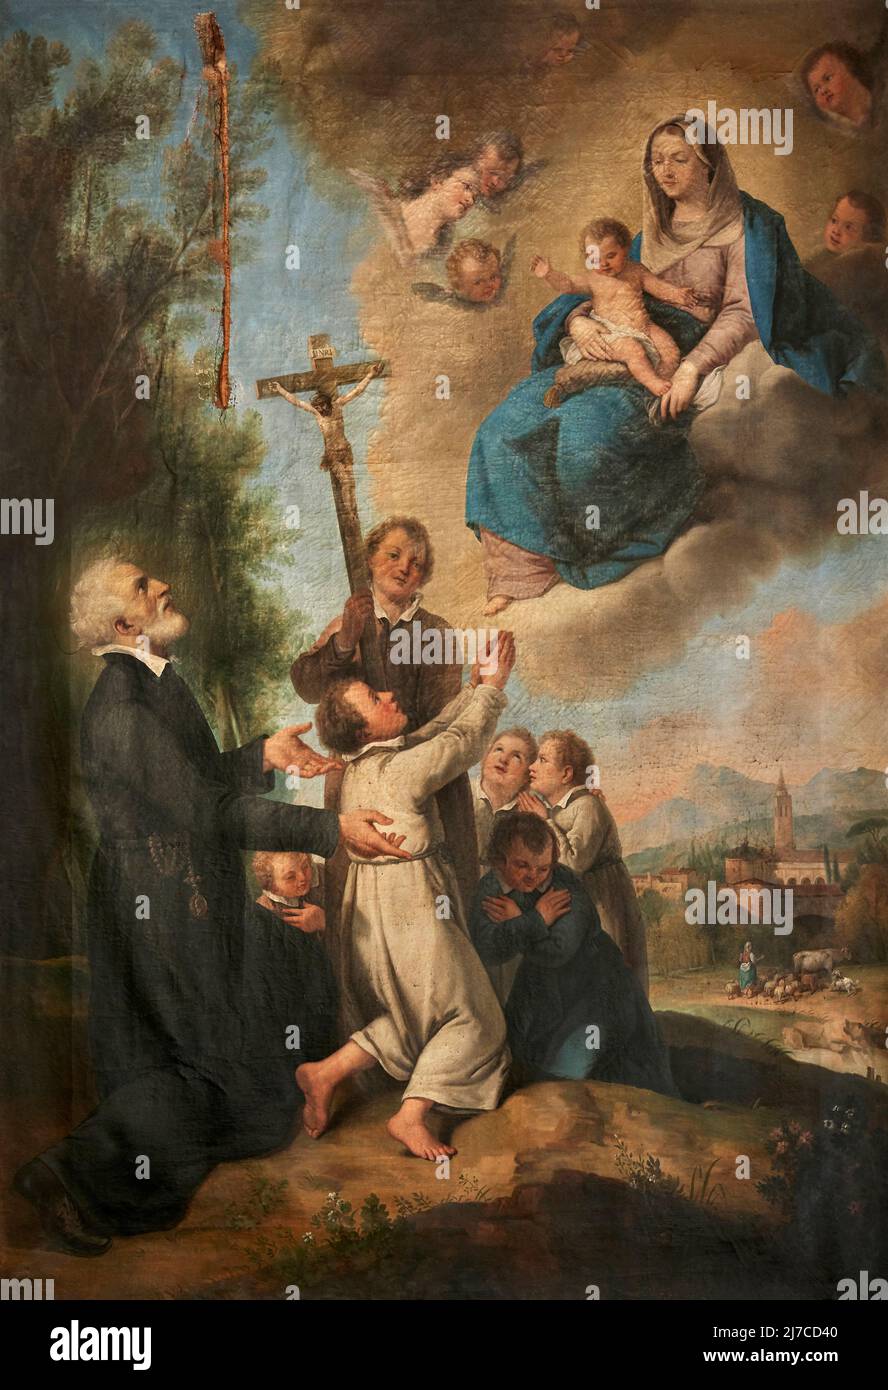 San Filippo Neri presenta i fanciulli alla Madonna- olio su tela - copia dal Francesco Zuccarelli di pittore bresciano della fine del XVIII secolo Stockfoto